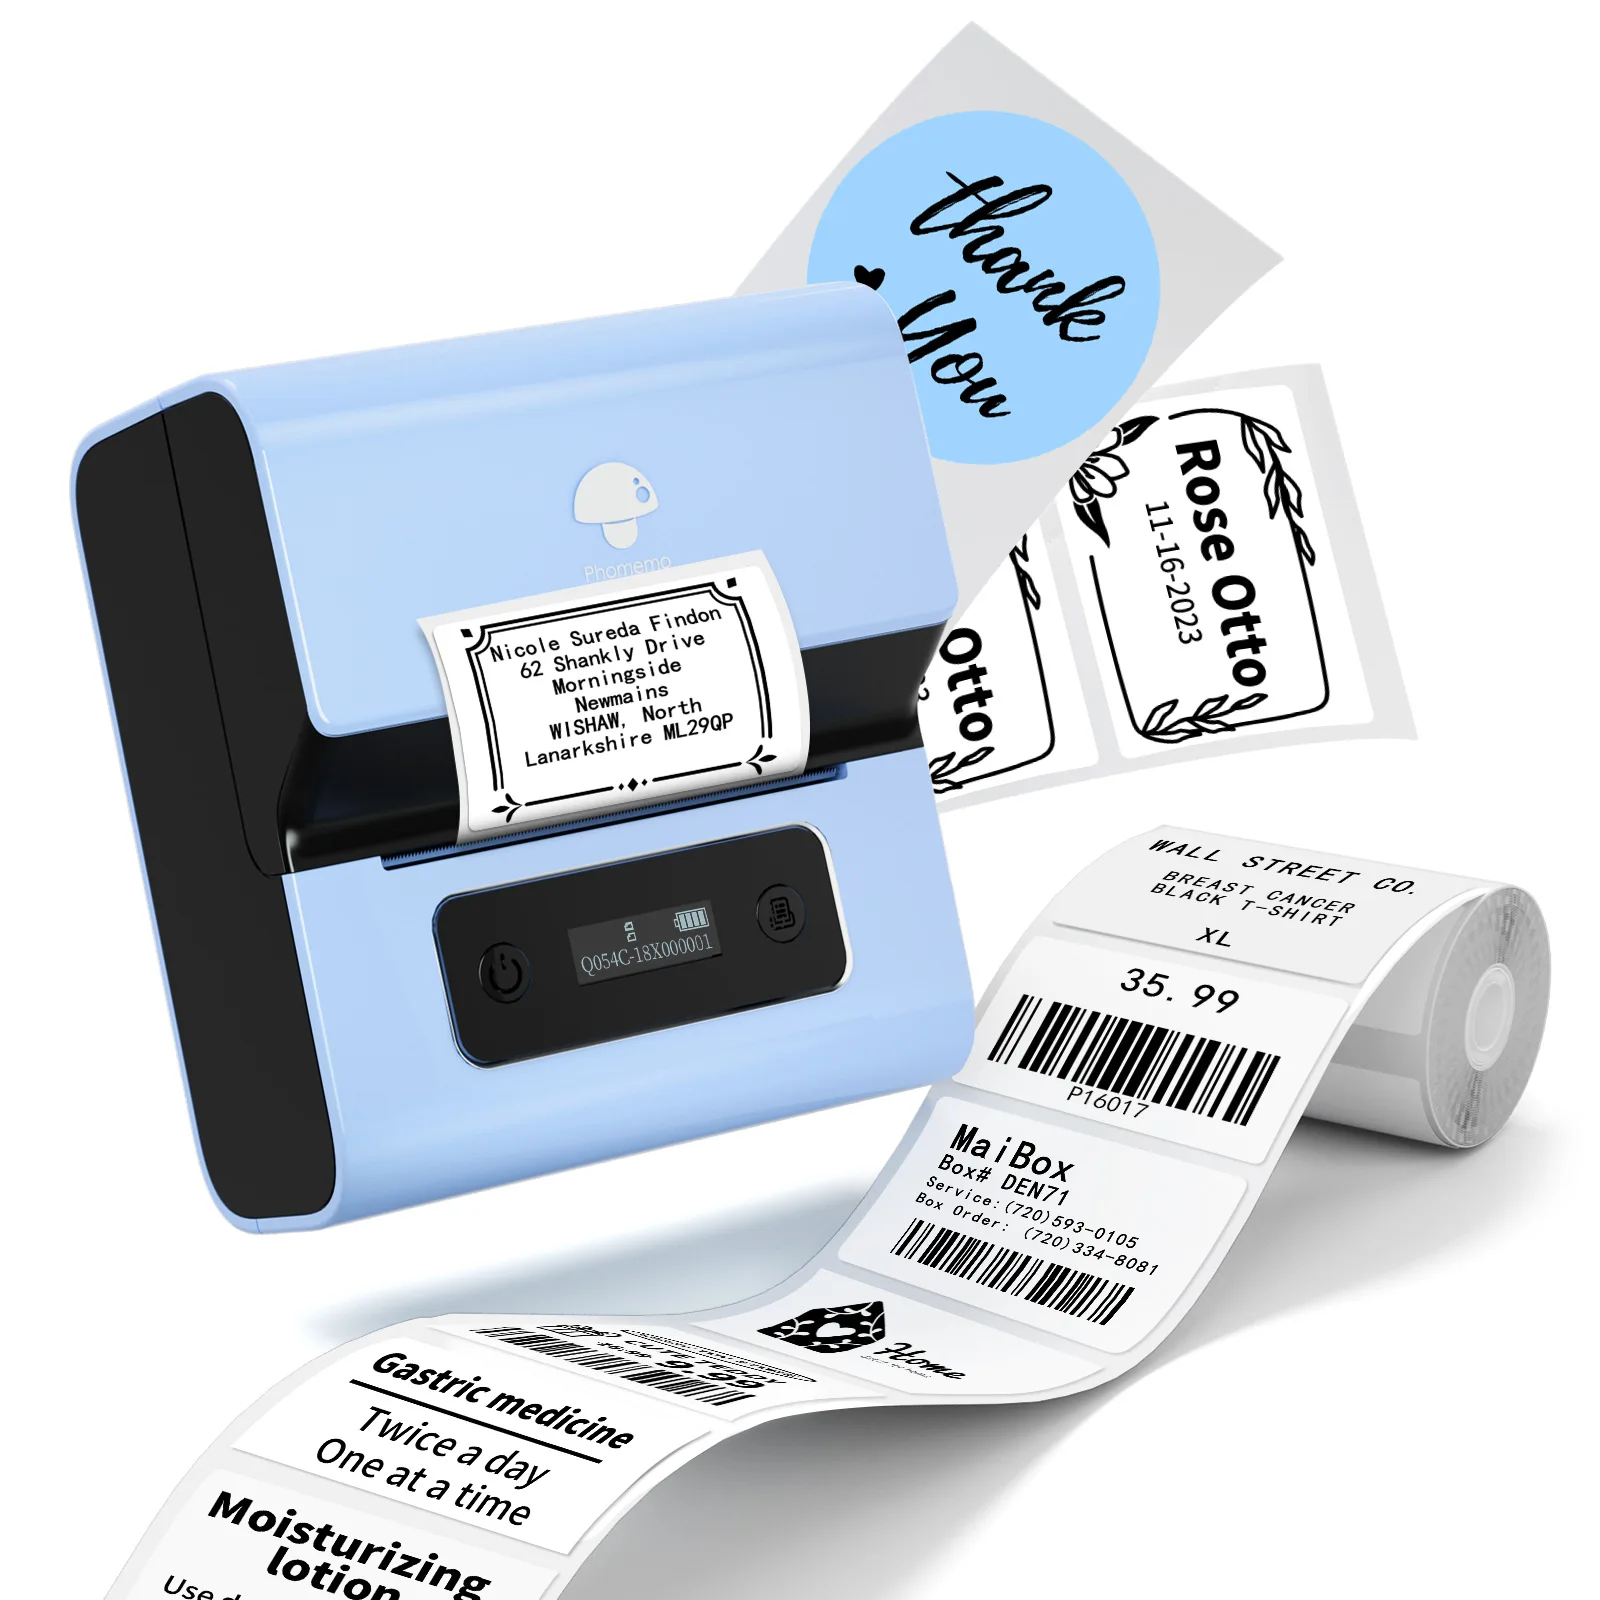 HotLabel Imprimante d'étiquettes thermiques 4 x 6 - Imprimante